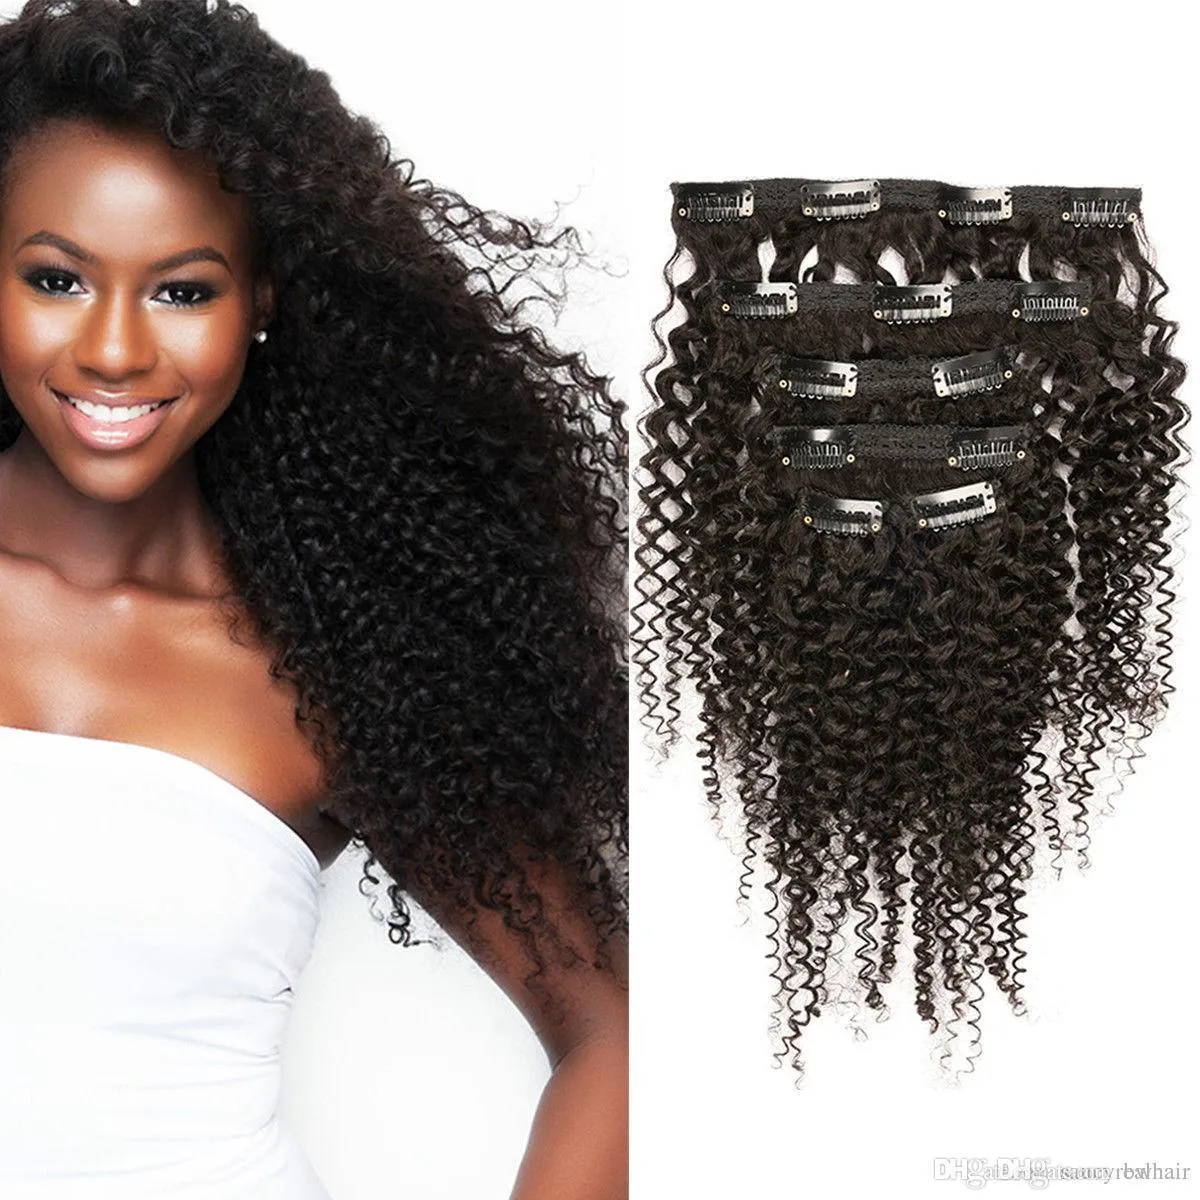 7a Афро странный курсивый клип в человеческих волосах наращивания волос бразильский 100% Remy волосы 120g / набор 1 # 1b # 2 # 4 # 6 # 8 # 99J # 27 # 18 # 99J # 27 # 18 # без пучек